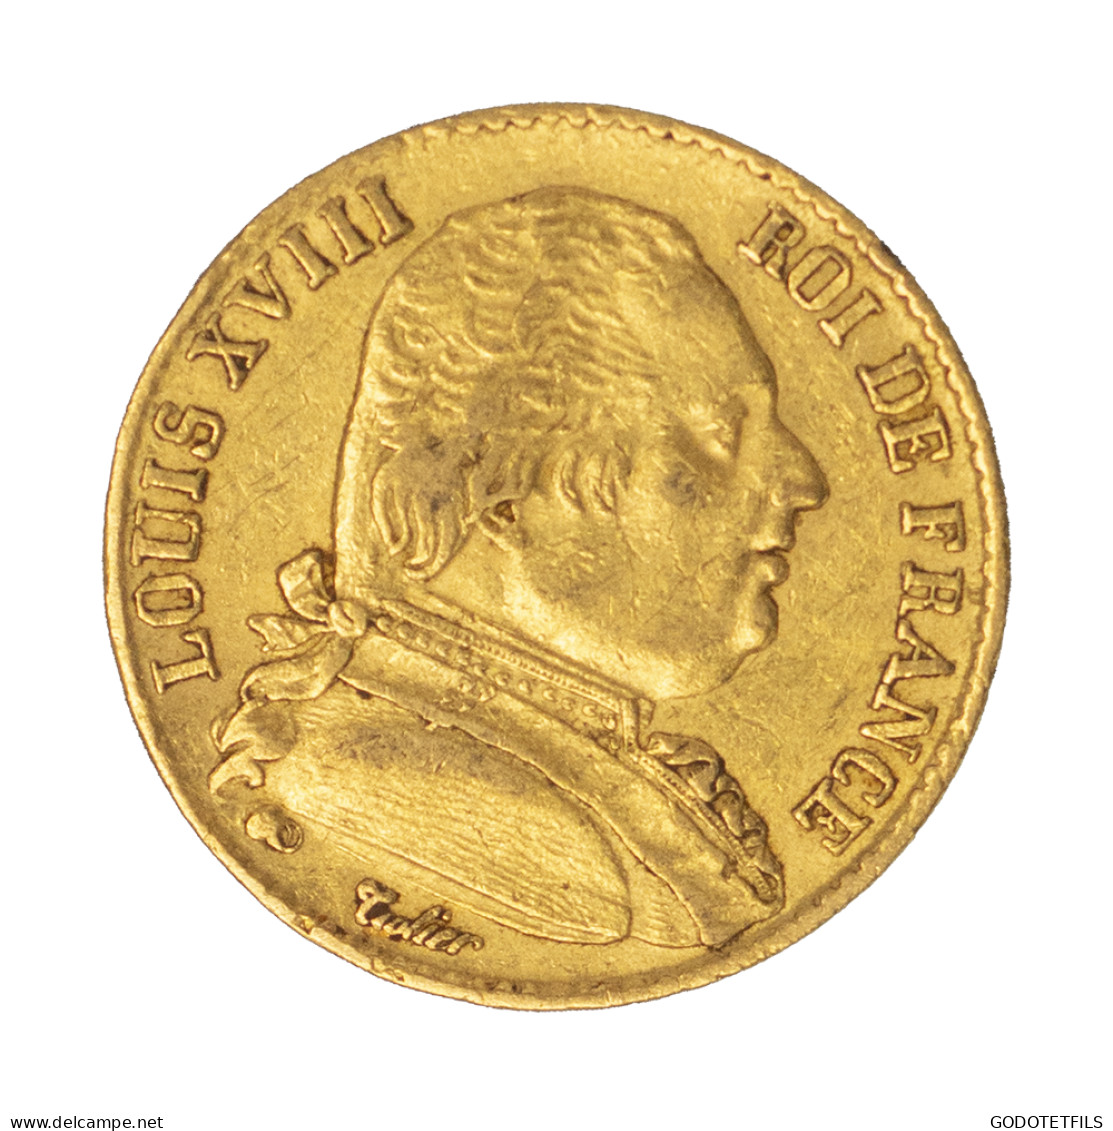 Louis XVIII -20 Francs 1815 Paris - 20 Francs (gold)